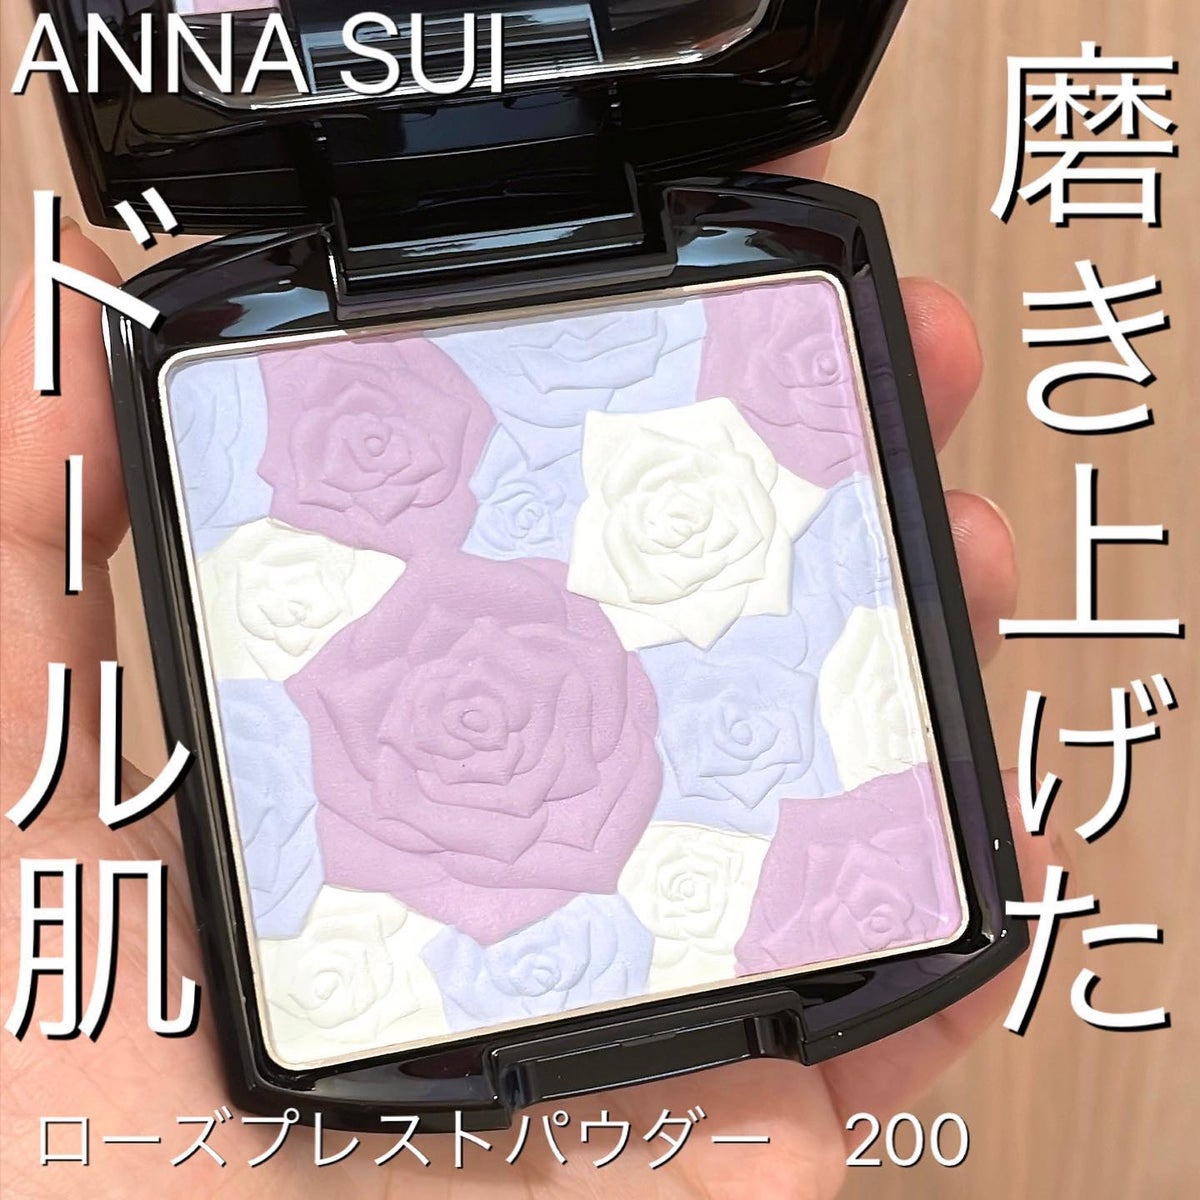 【新品未使用品】ANNA SUIローズプレストパウダー200